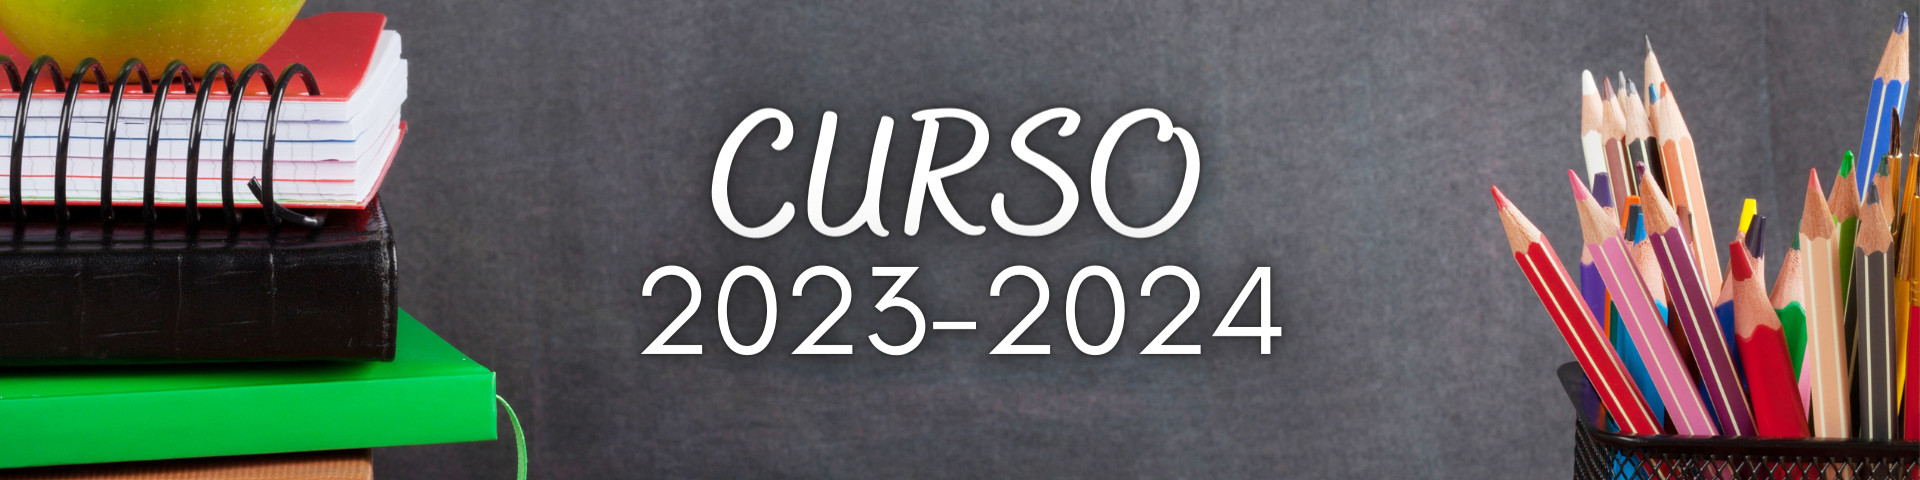 CURS 2023-2024 (1)